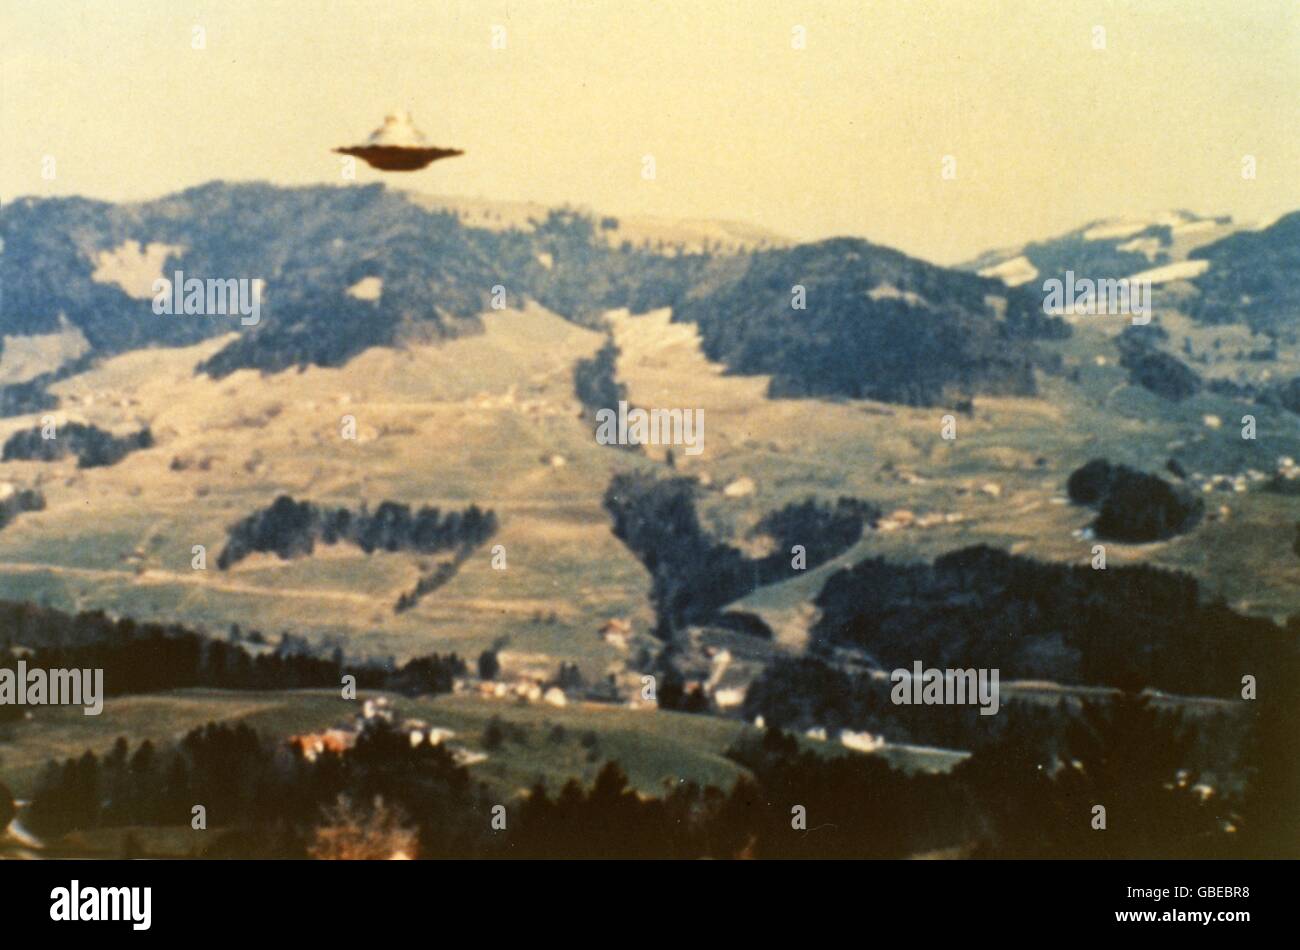 astronautica, oggetti volanti non identificati (UFO), ufo, show flight of Semiases ship, Bachtelhörnli-Unterbachtel, Svizzera, 8.3.1976, diritti aggiuntivi-clearences-non disponibili Foto Stock